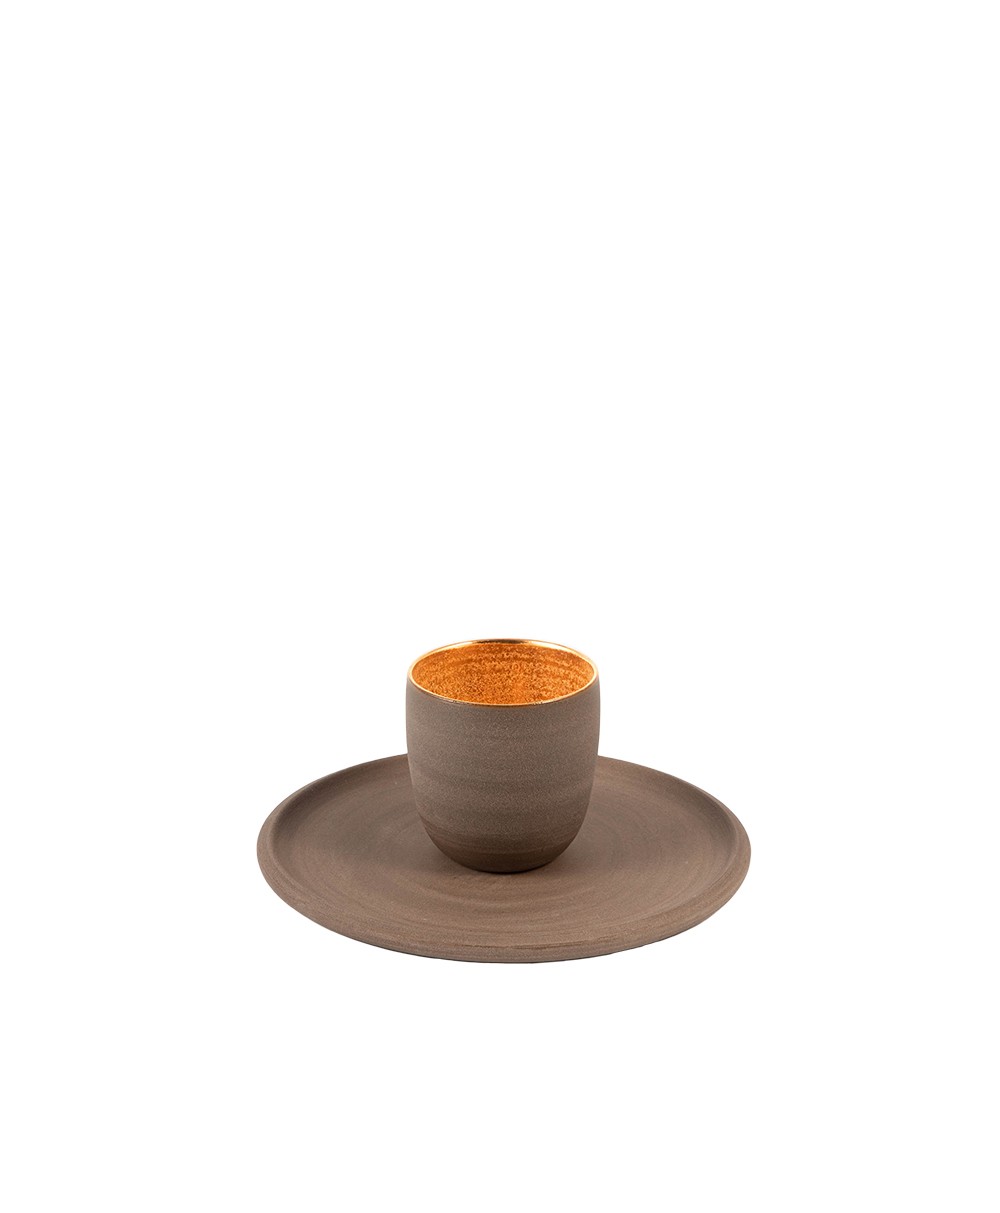 Hier sehen Sie die Espresso Tasse von Ton-Stein-Gut in der Farbe taupe - RAUM concept store